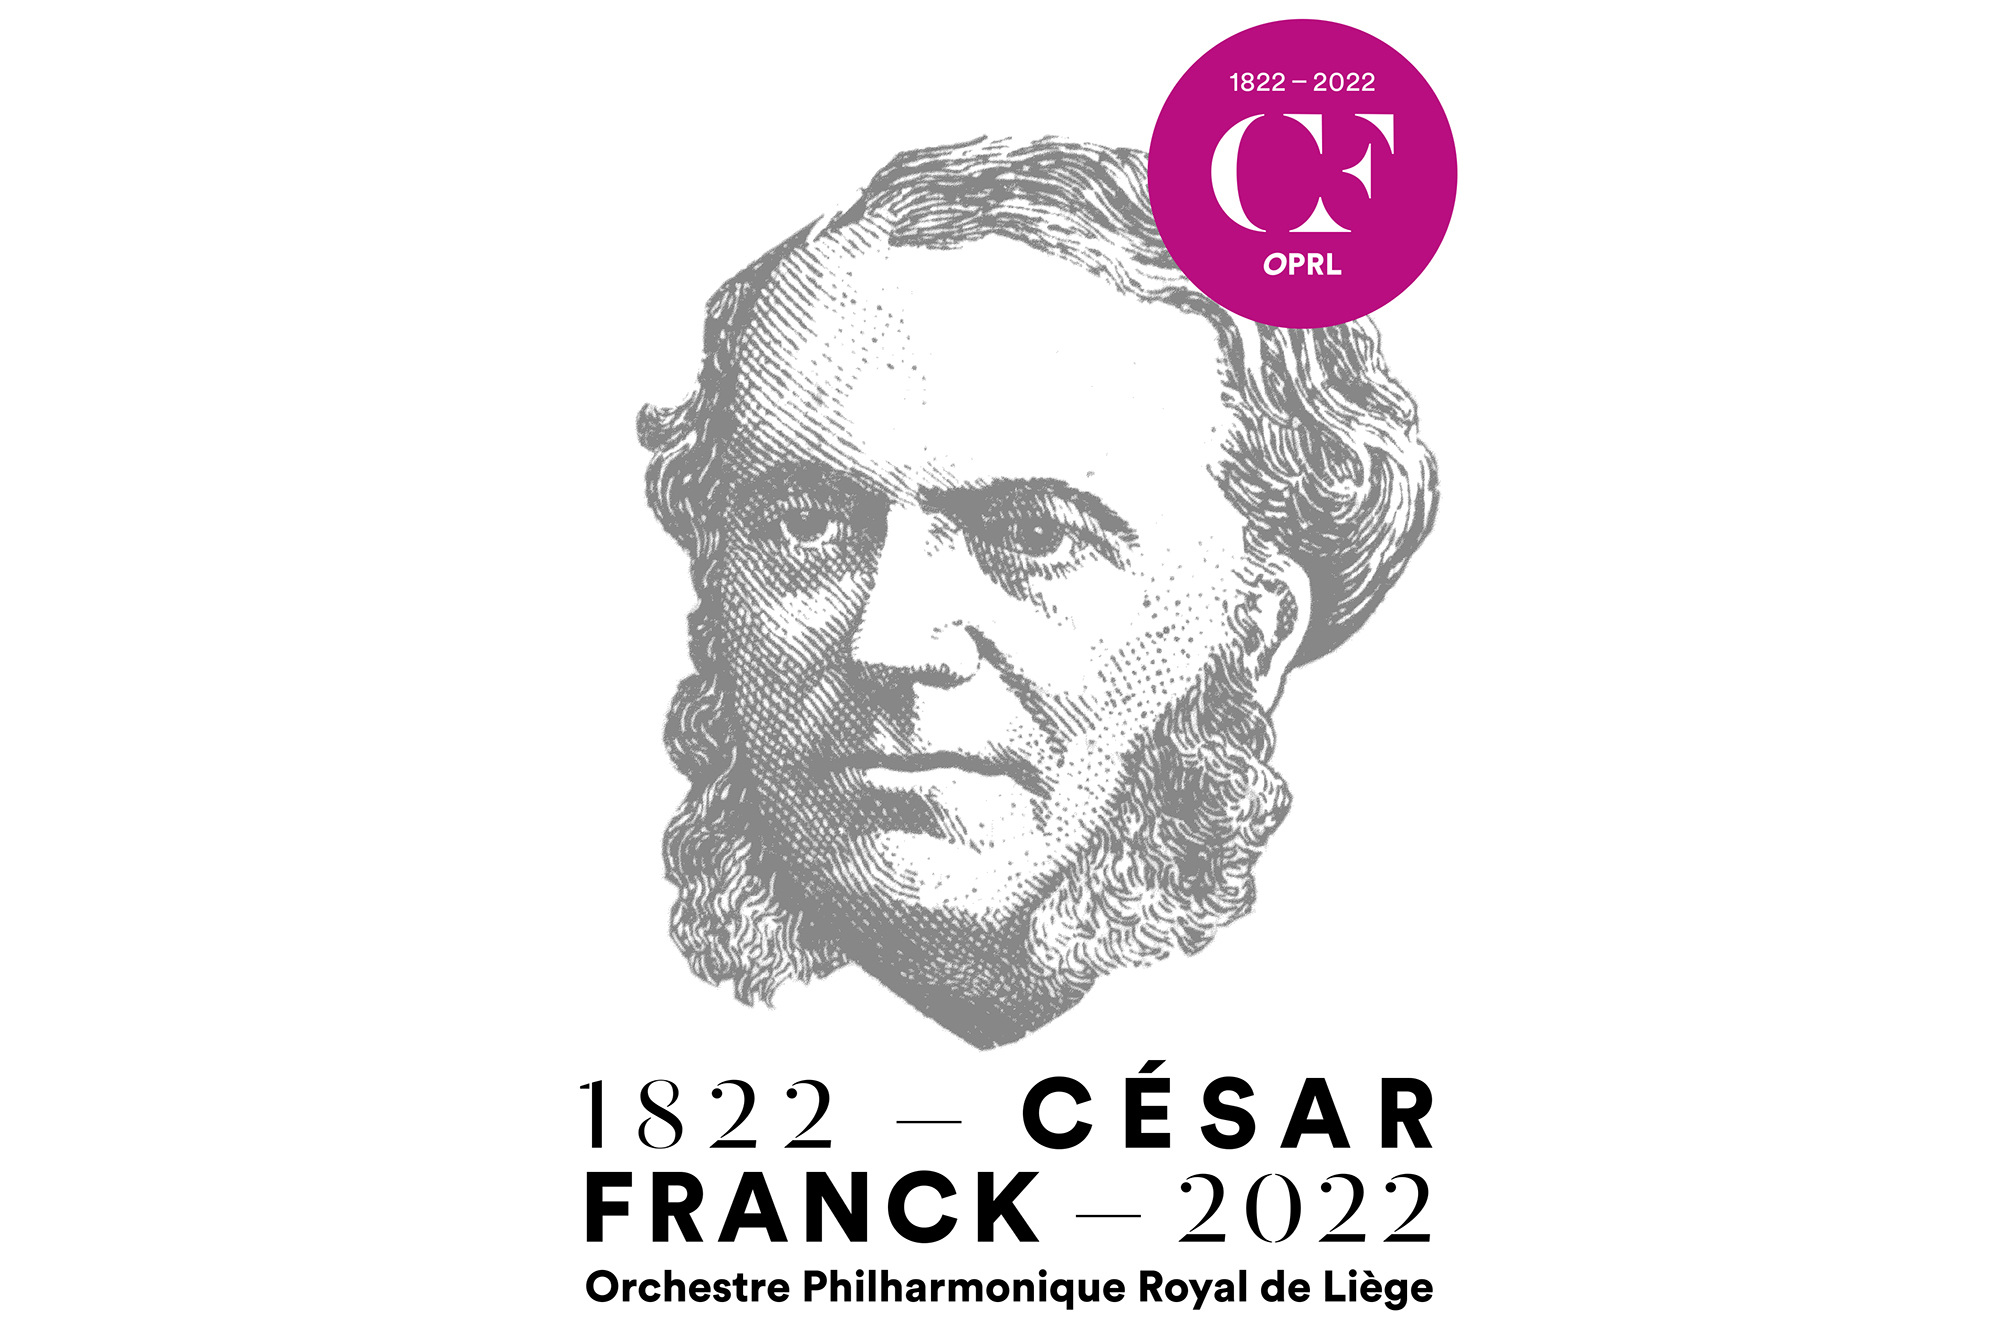 Bicentenaire César Franck (Archivbild: OPRL)